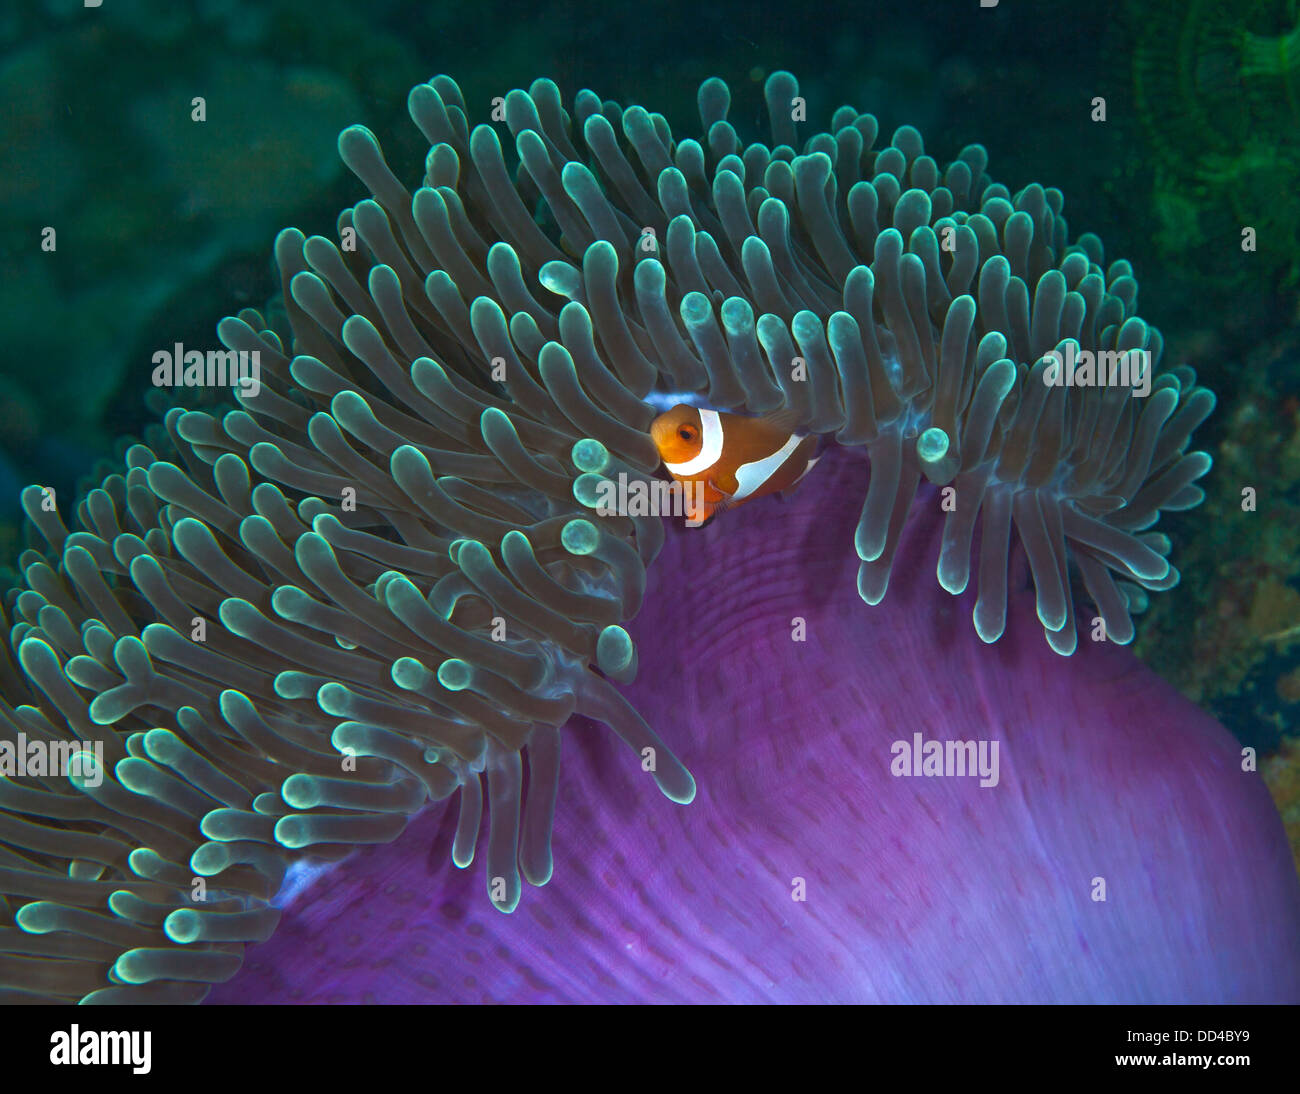 Falso Clownfish immerso nel verde viola anemone Foto Stock